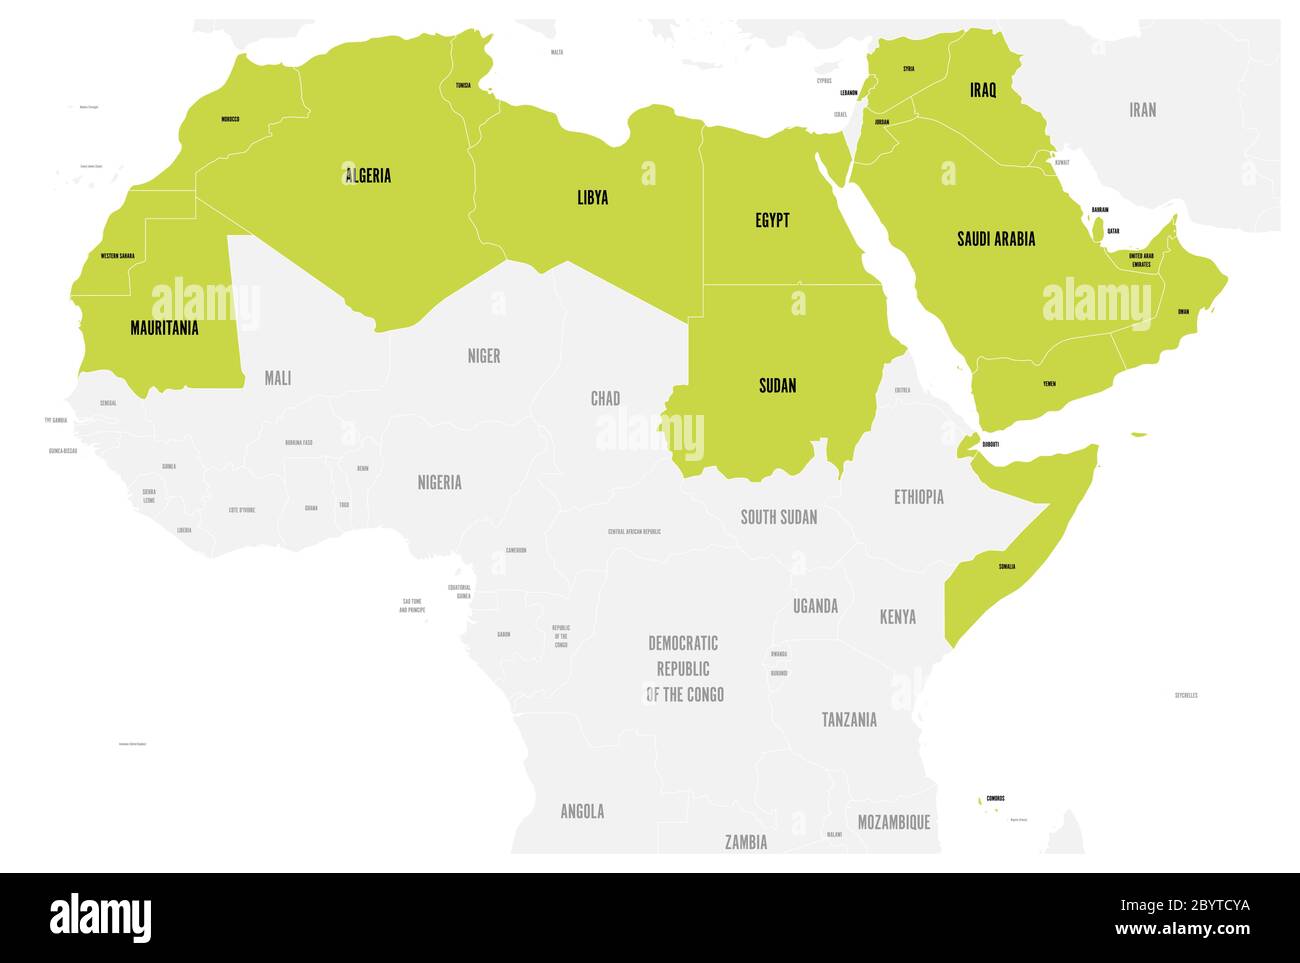 Mappa politica degli stati del mondo arabo con 22 paesi di lingua araba illuminati. Africa settentrionale e Medio Oriente. Illustrazione vettoriale. Illustrazione Vettoriale